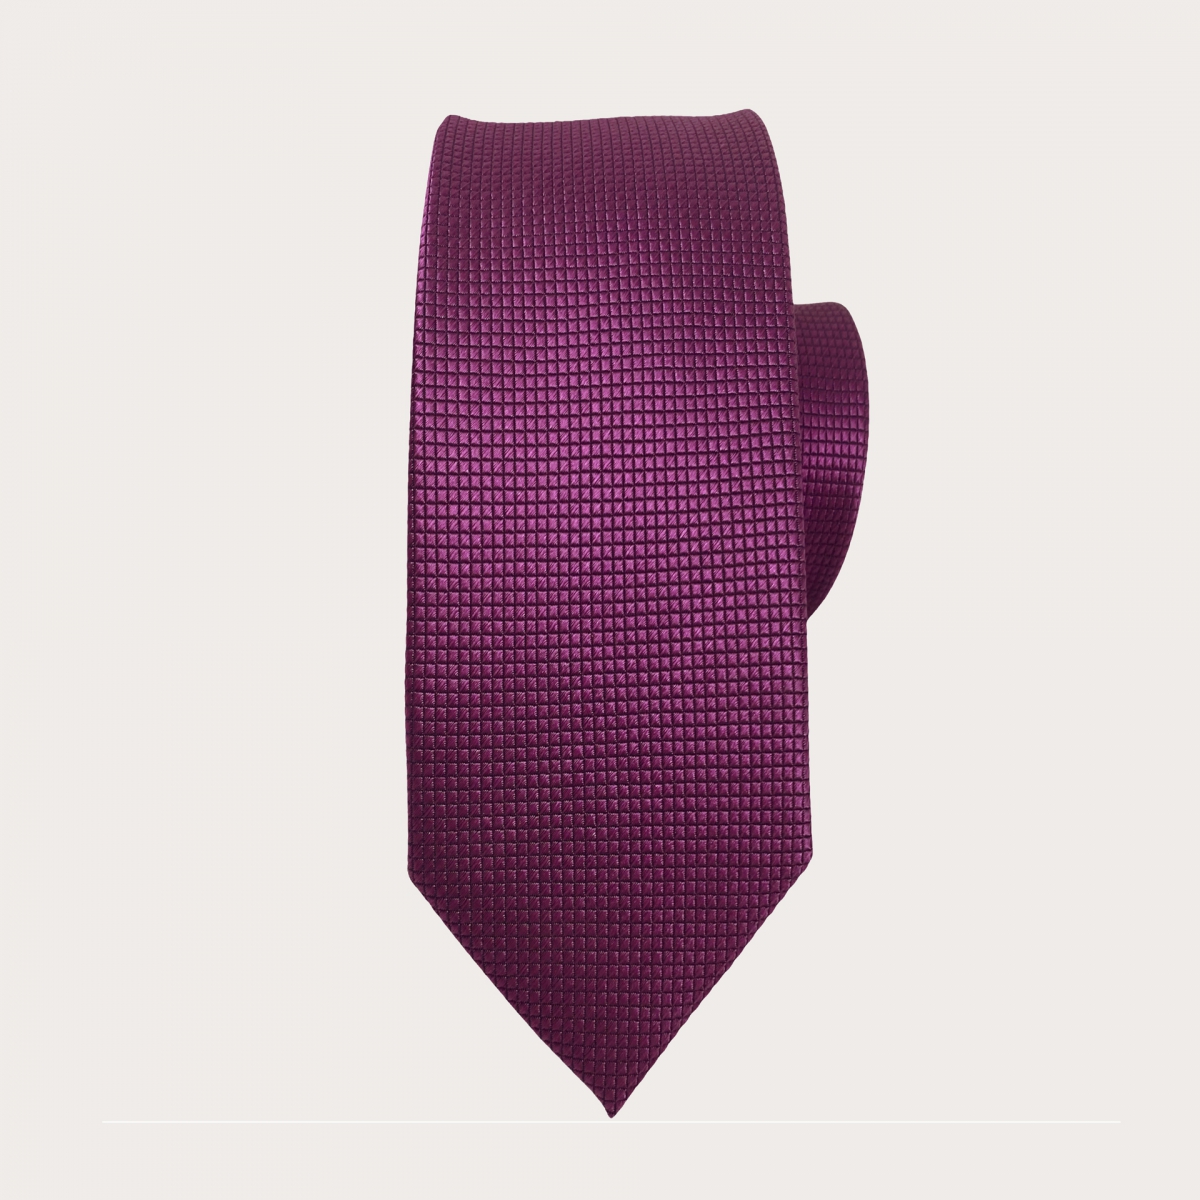 Cravate artisanale violet en soie